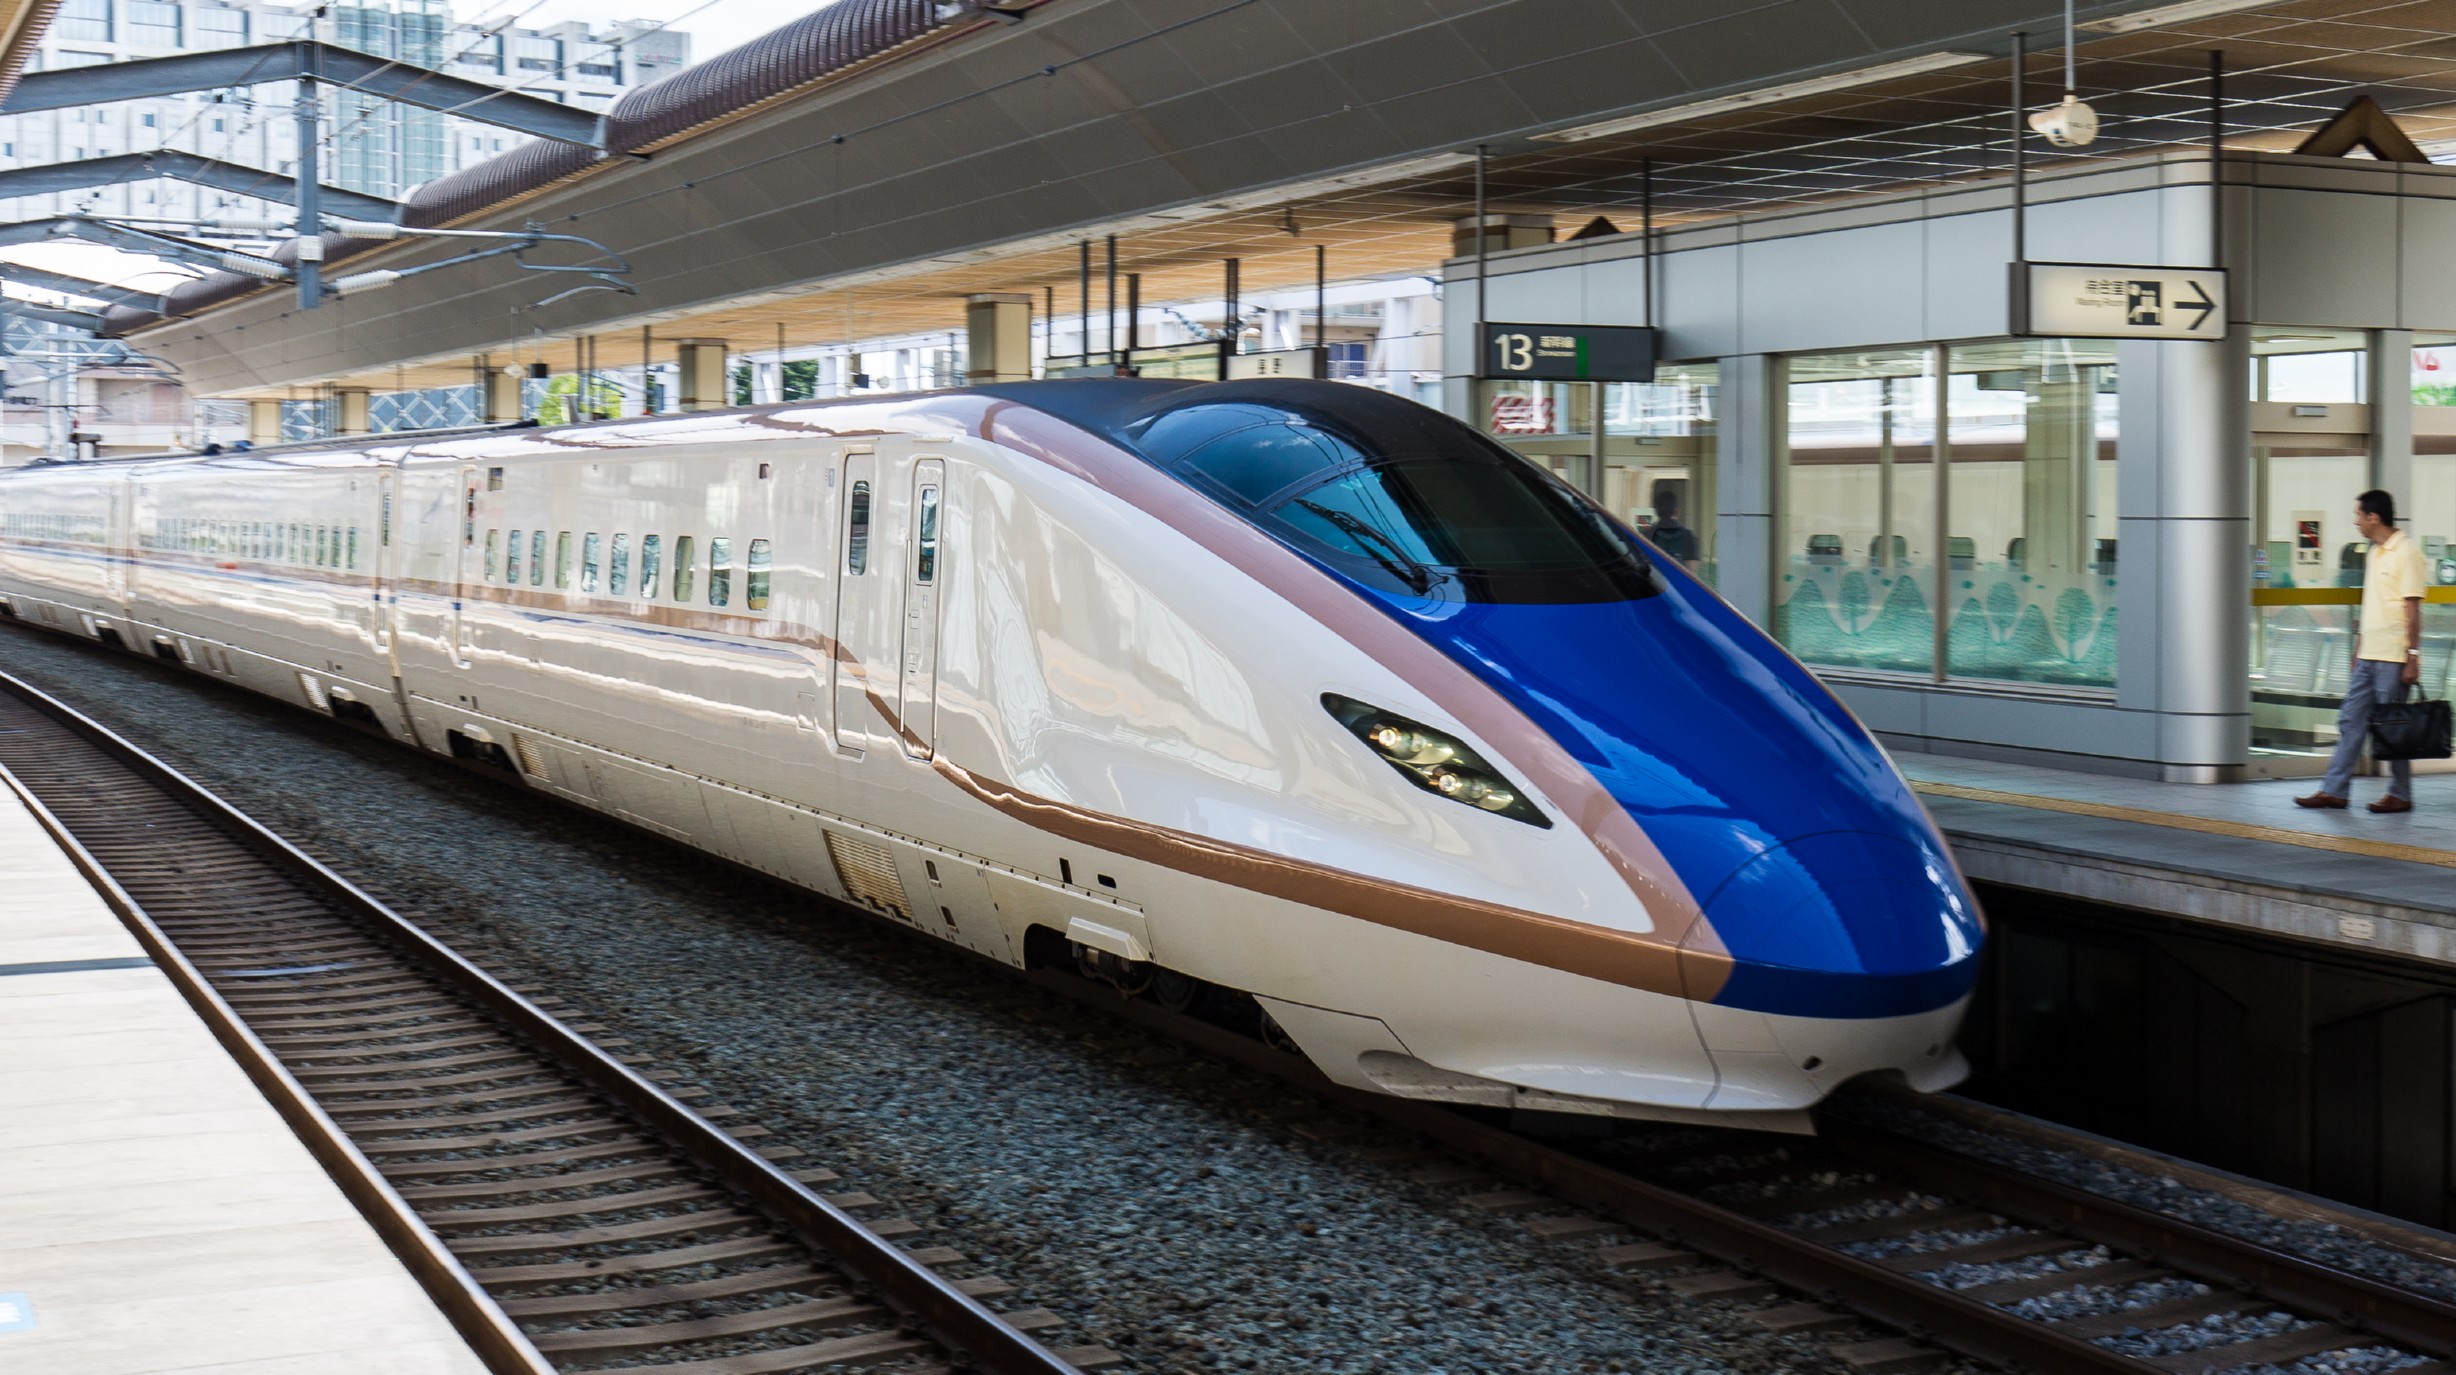 16-daagse treinreis door Japan met de beroemde shinkansen hogesnelheidstreinen van Japan Rail